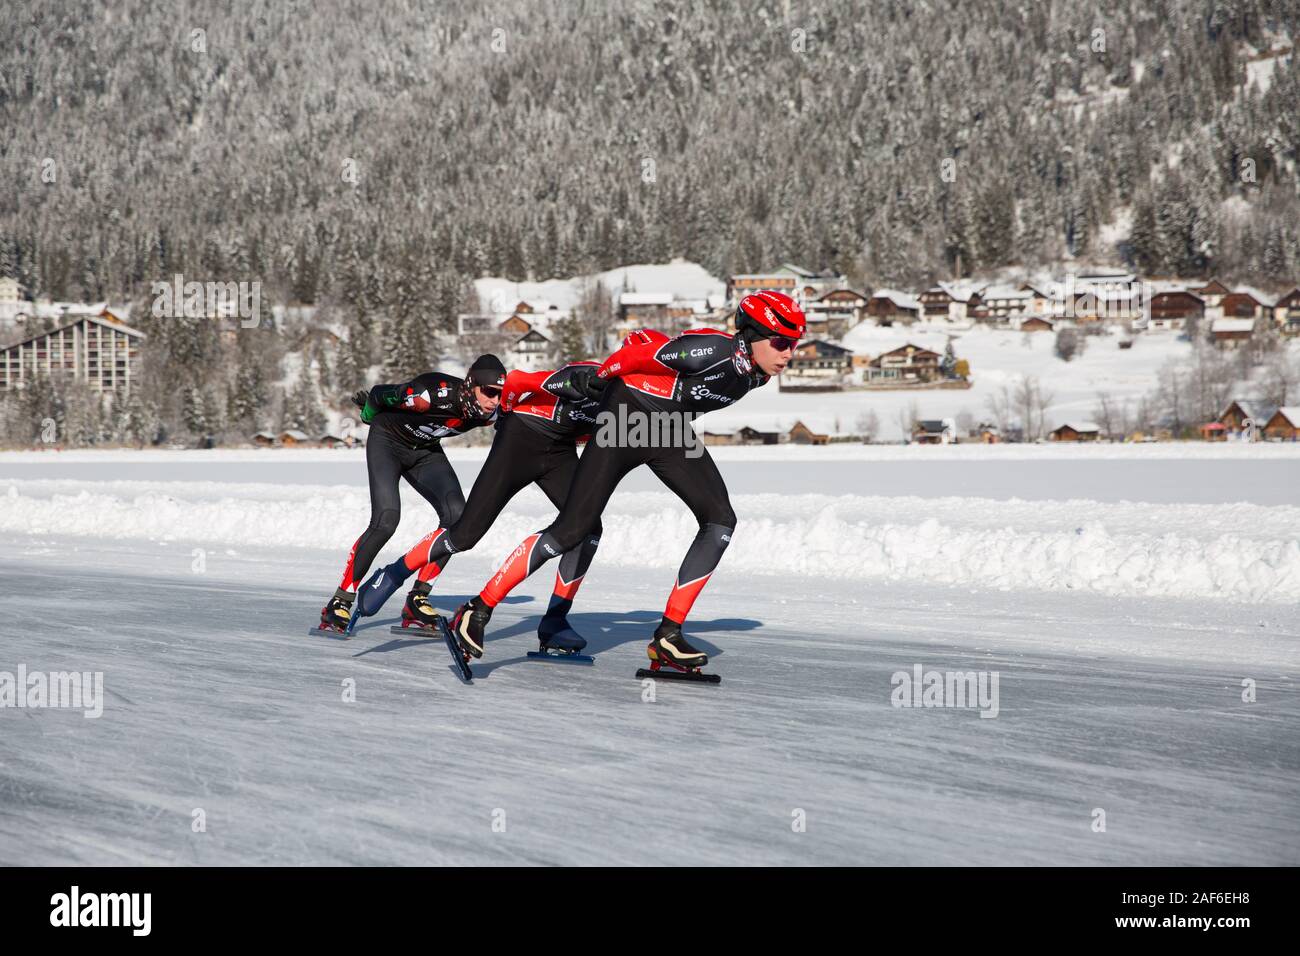 Schlittschuhlaufen auf dem See, in einem schönen Winterlandschaft. Gruppe von Männern Meisterschaft Marathon Ice Speed-Skating auf Natureis, Weissensee, Österreich Stockfoto